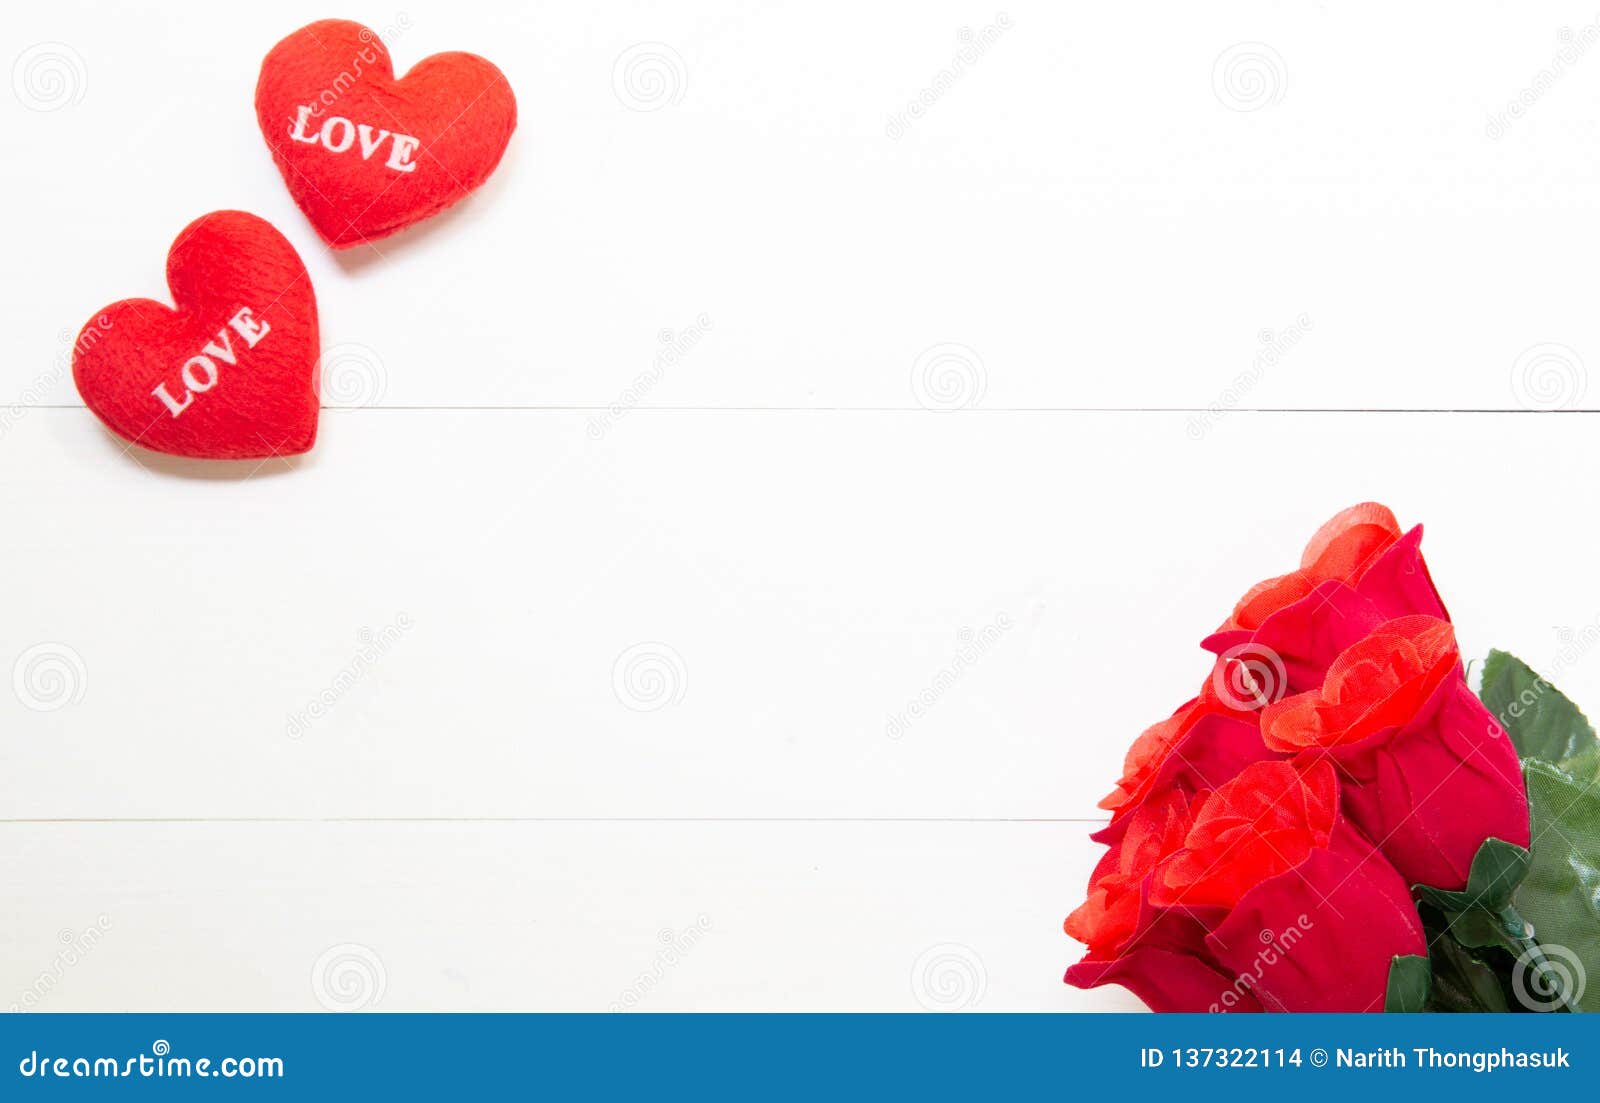 与红色玫瑰色花和心形在木桌上 2月14日的当前礼物与浪漫拷贝空间的爱天库存照片 图片包括有与红色玫瑰色花和心形在木桌上 2月14日的当前礼物与浪漫拷贝空间的爱天 137322114